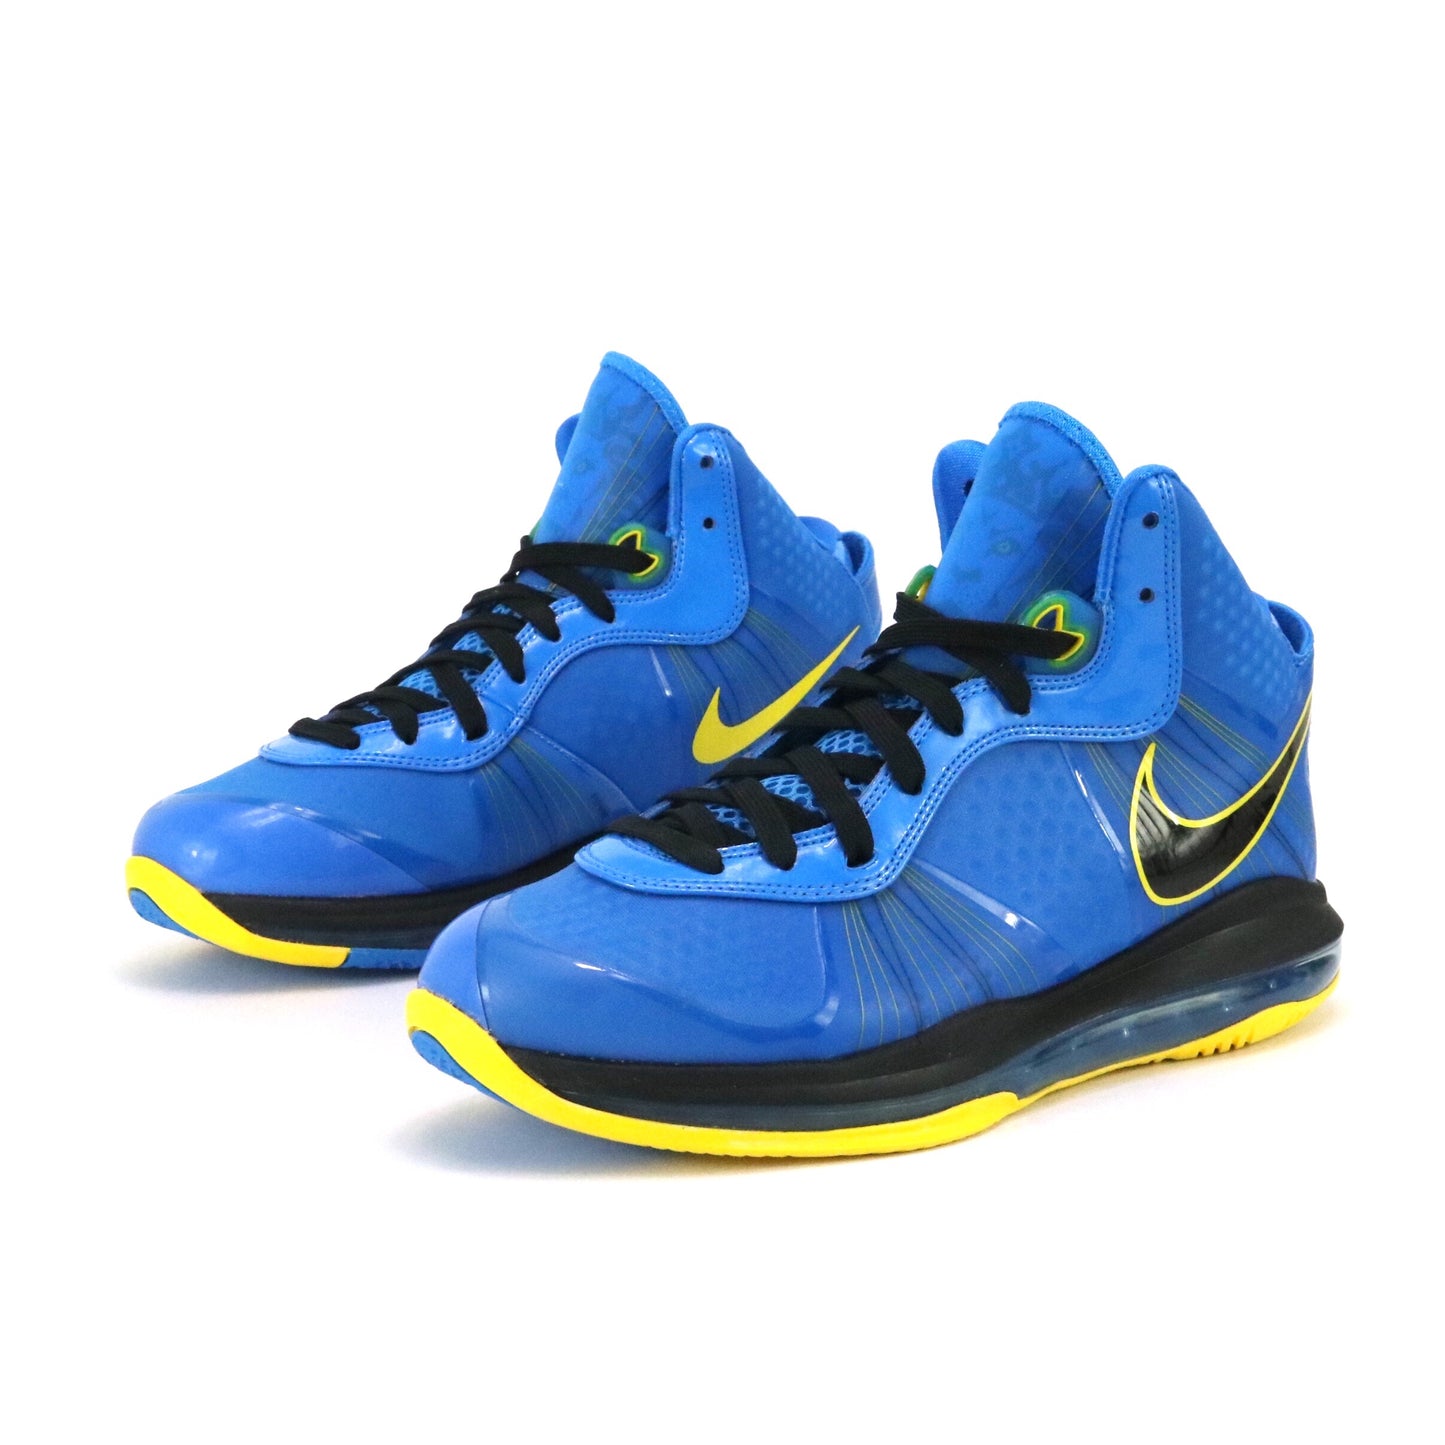 Nike Lebron 8 V2 Entourage Photo Blue Black Tour Yellow 2011